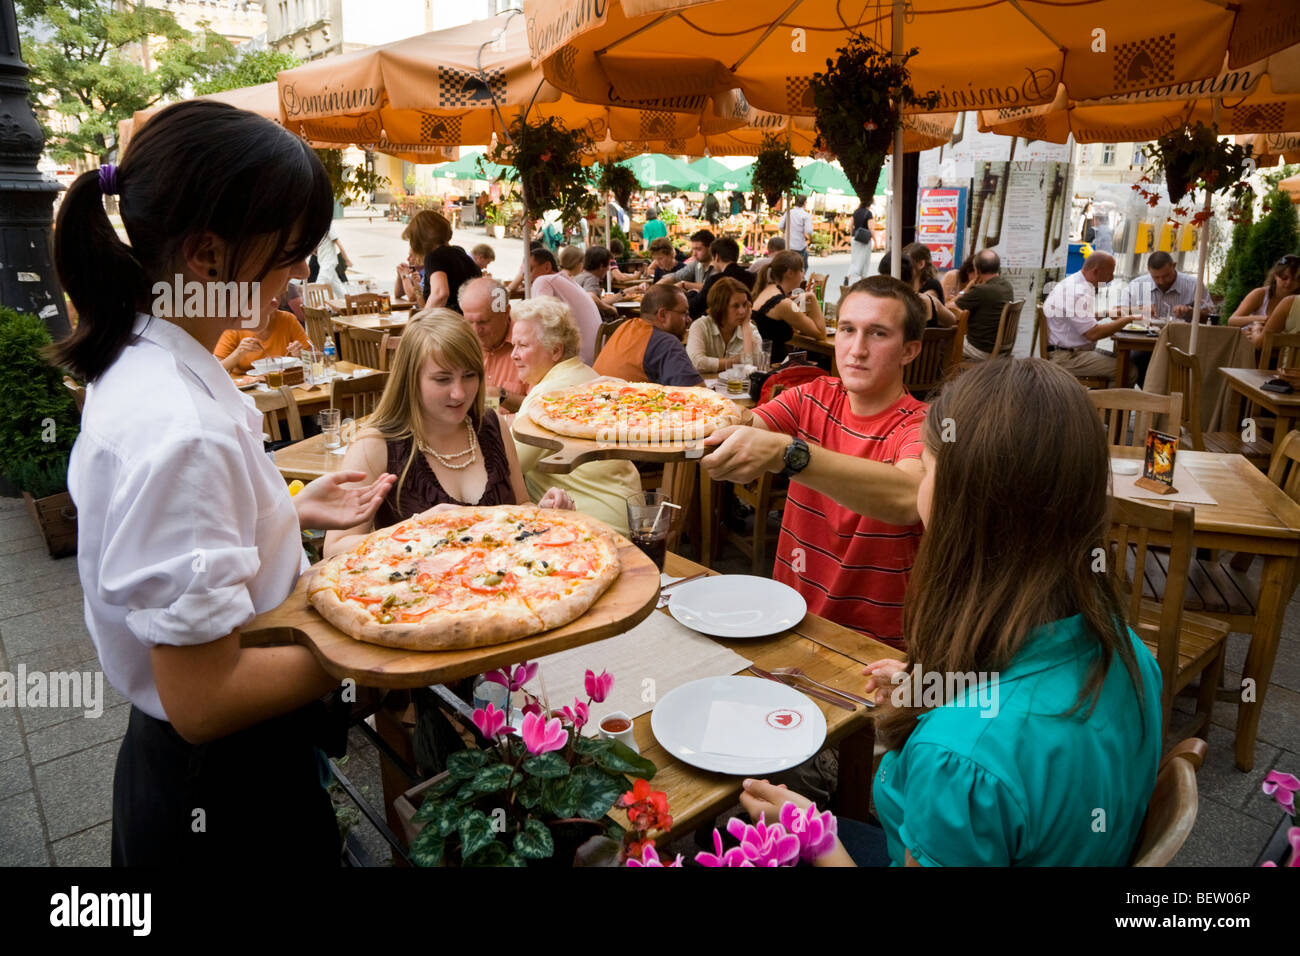 Serveuse sert des pizzas pour les jeunes touristes anglais assis à une table de restaurant. Marché / Markt. Cracovie. La Pologne. Banque D'Images